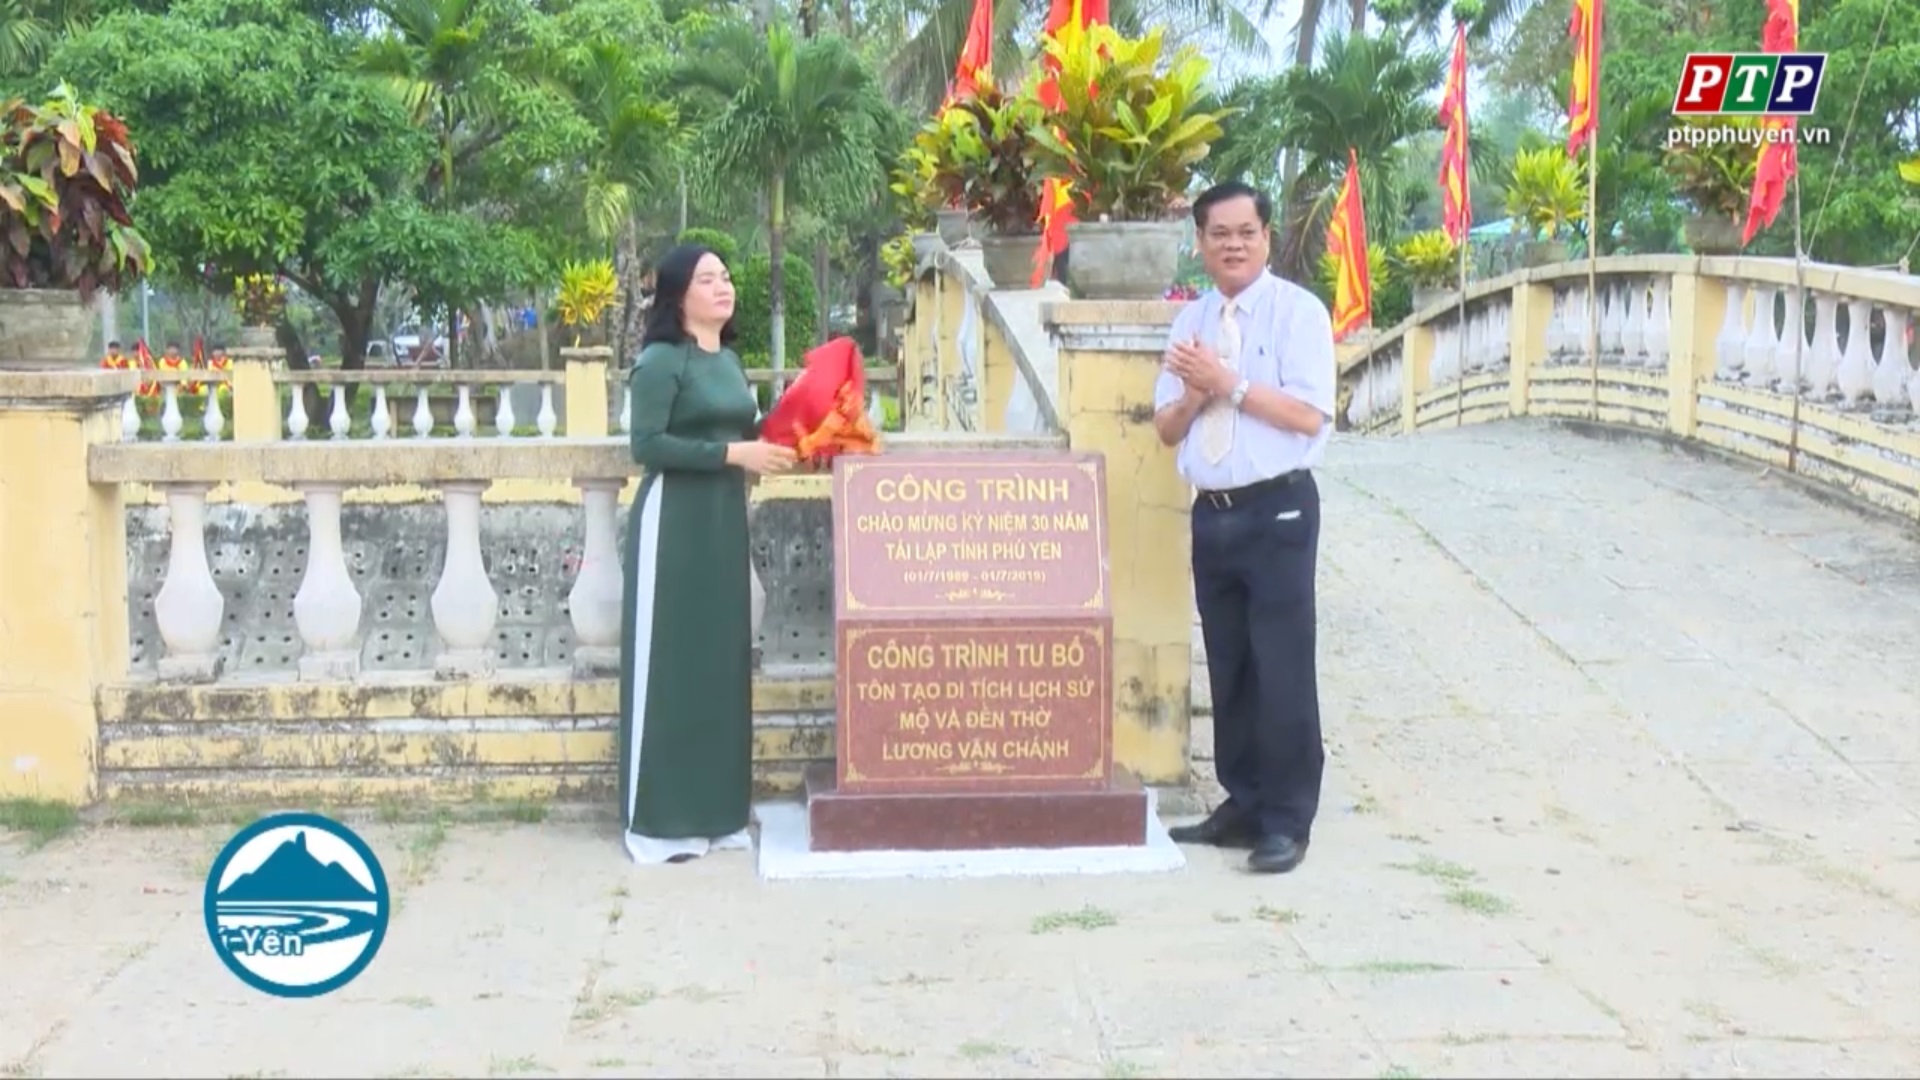 Khánh thành và gắn biển công trình chào mừng 30 năm Ngày tái lập tỉnh Phú Yên